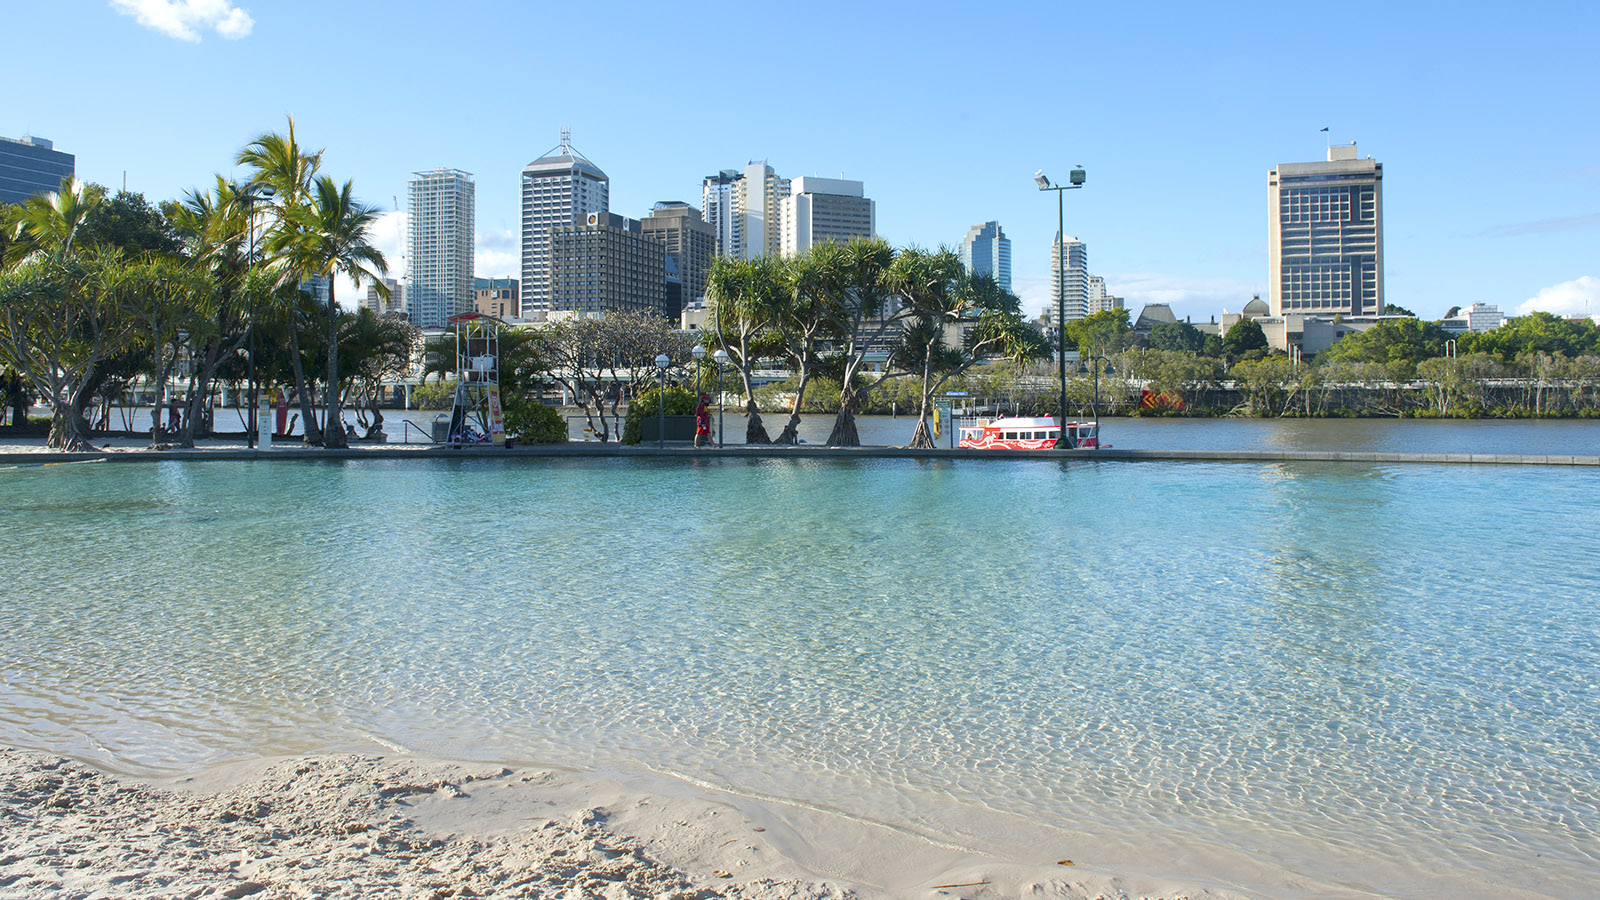 Der Süden von Queensland: Strandvergnügen in der City: der urban beach der South Bank Parklands von Brisbane. Foto: Hilke Maunder